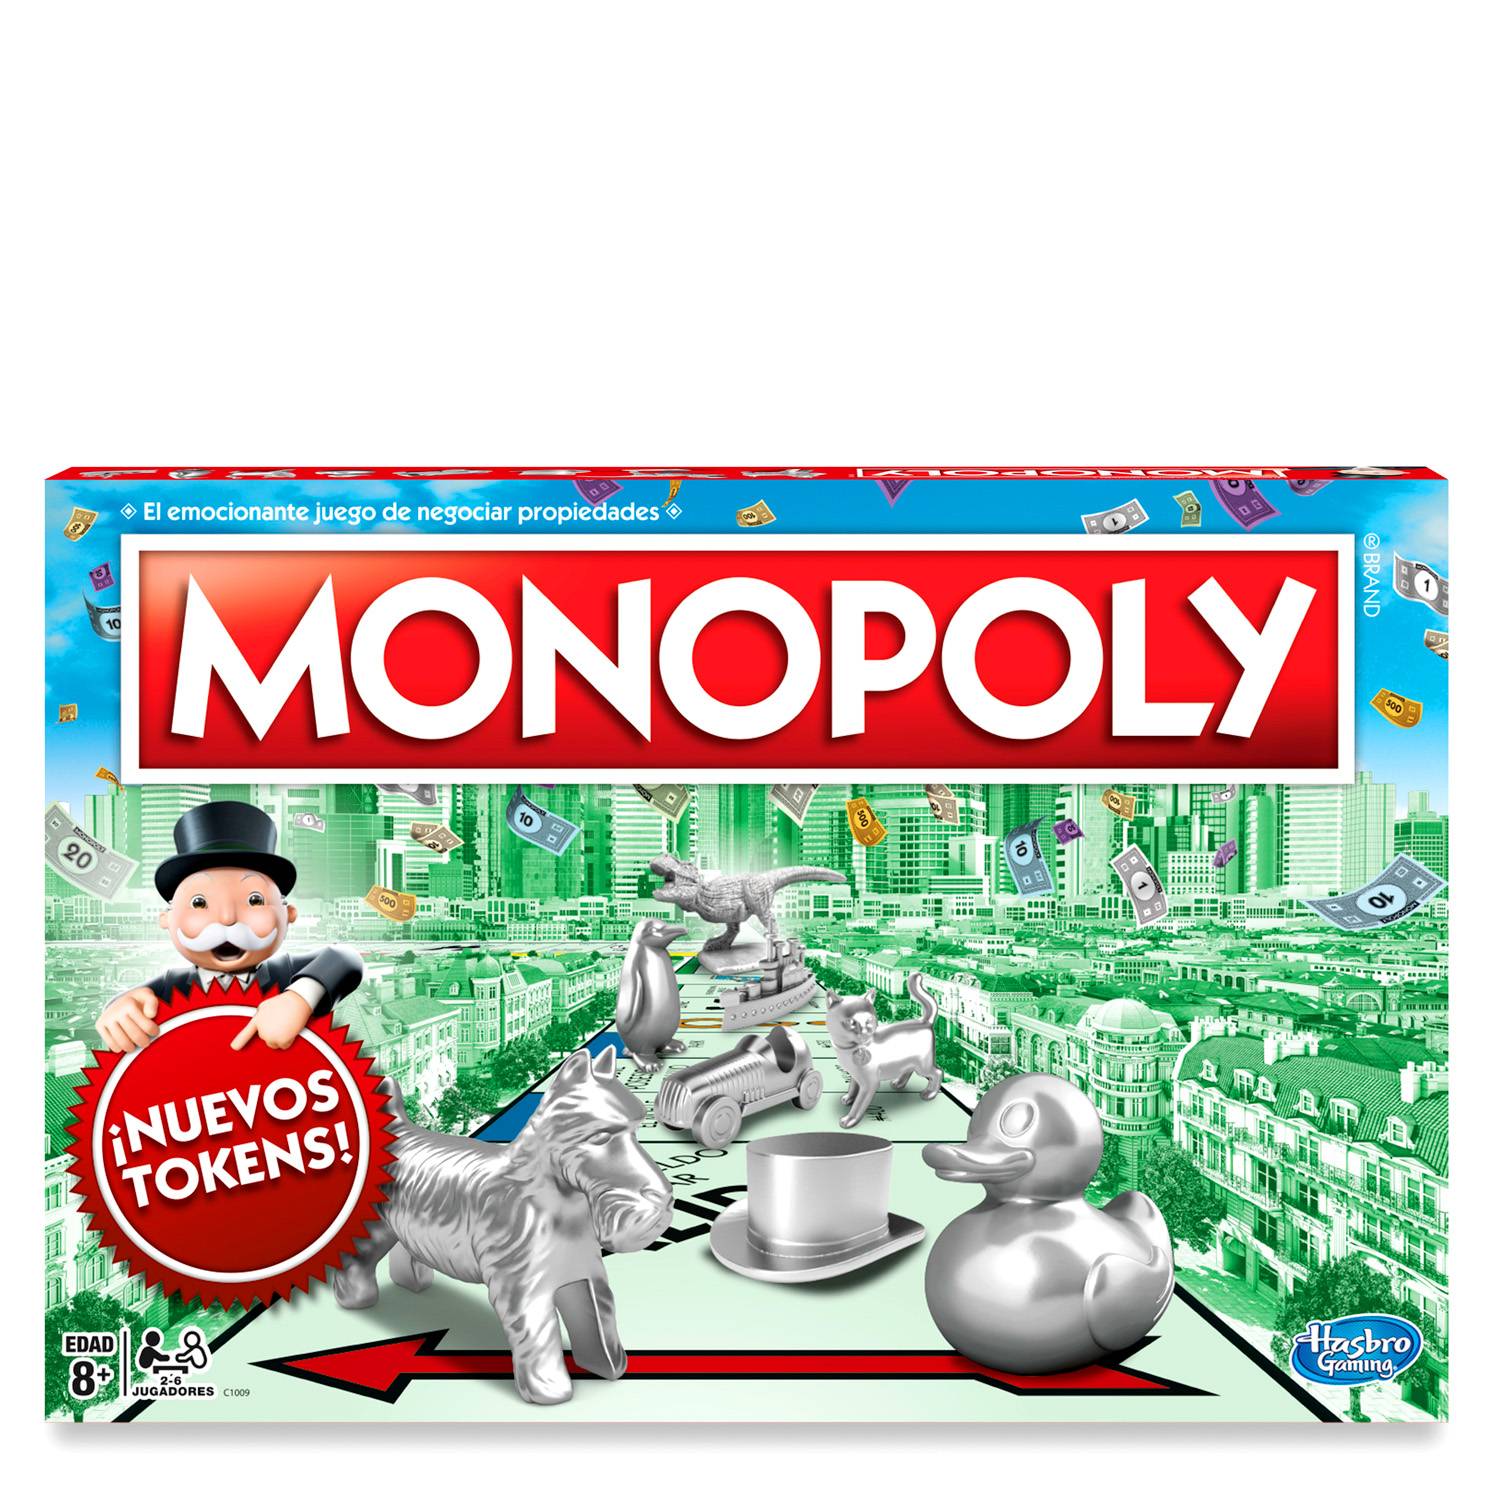 Monopoly Juego de Mesa clásico para la Familia de 2 a 6 Jugadores